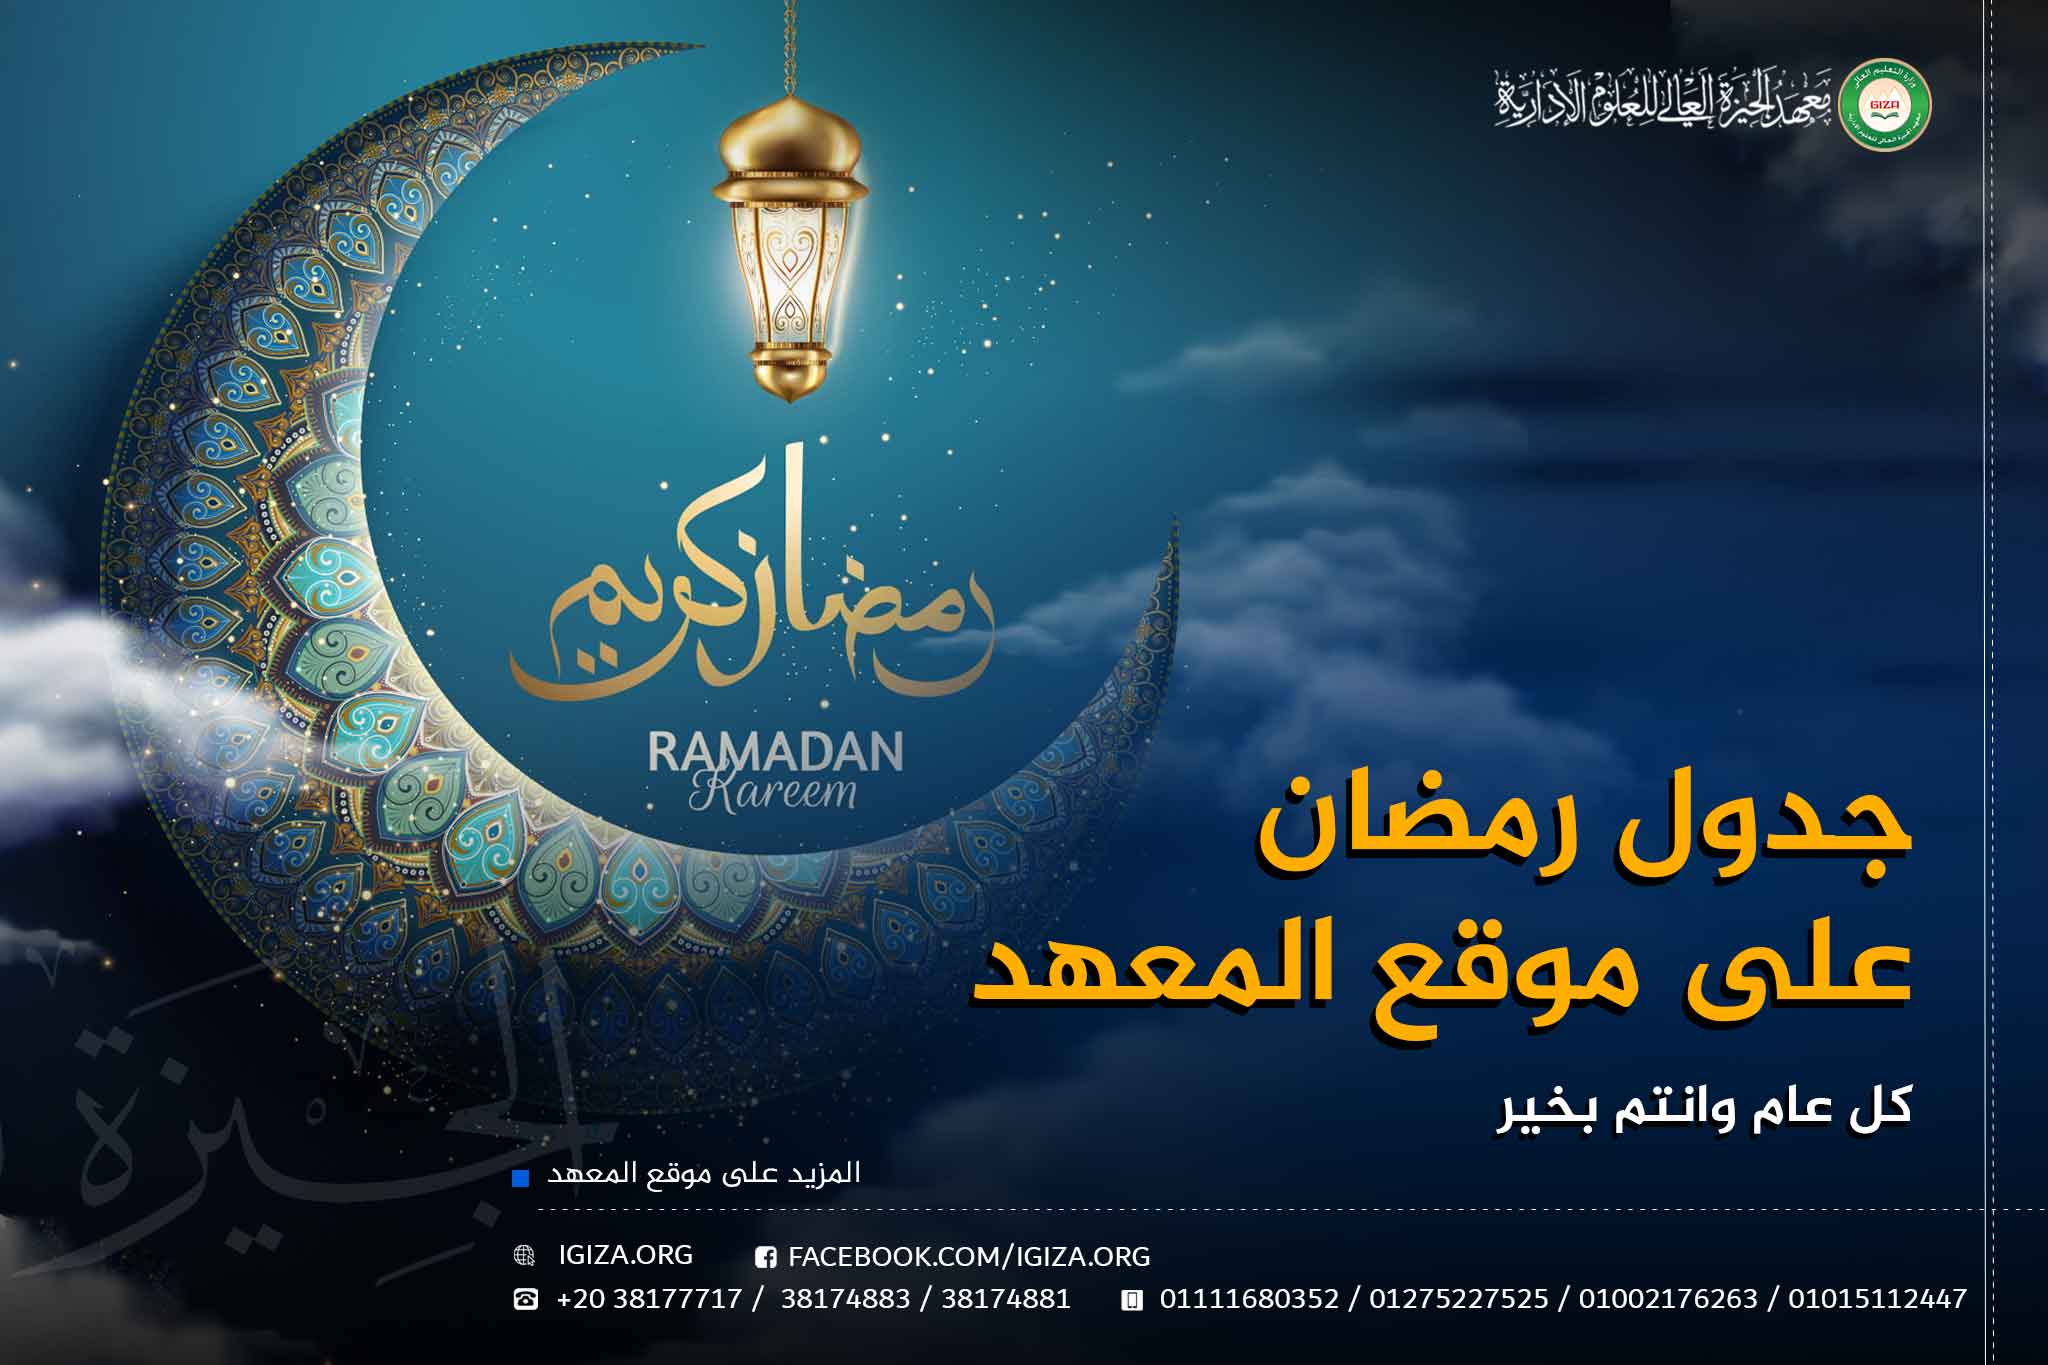 جدول رمضان على موقع المعهد